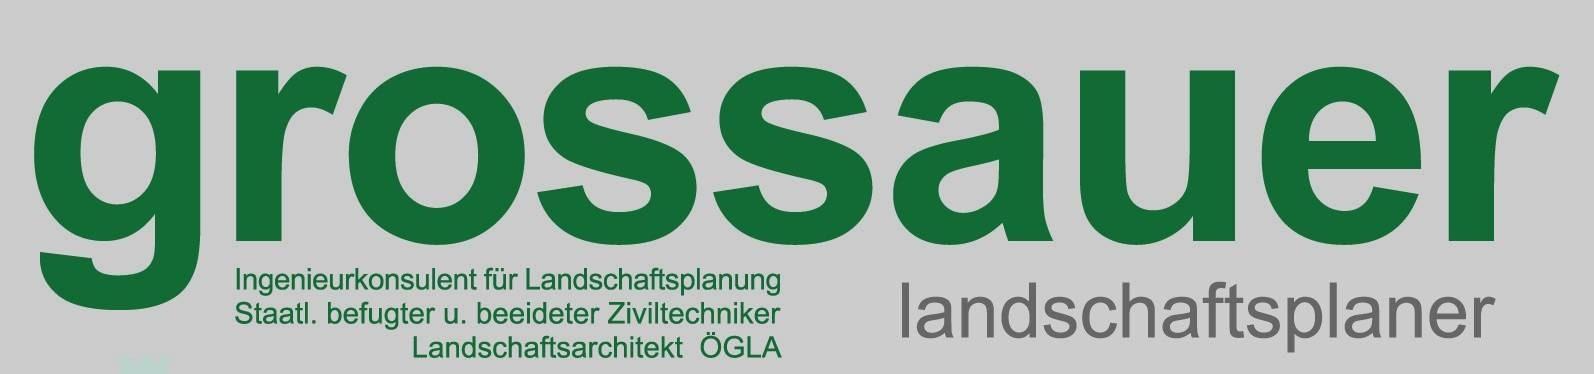 Logo Ingenieurkonsulent für Landschaftsplanung und -pflege Dipl-Ing. Franz Grossauer